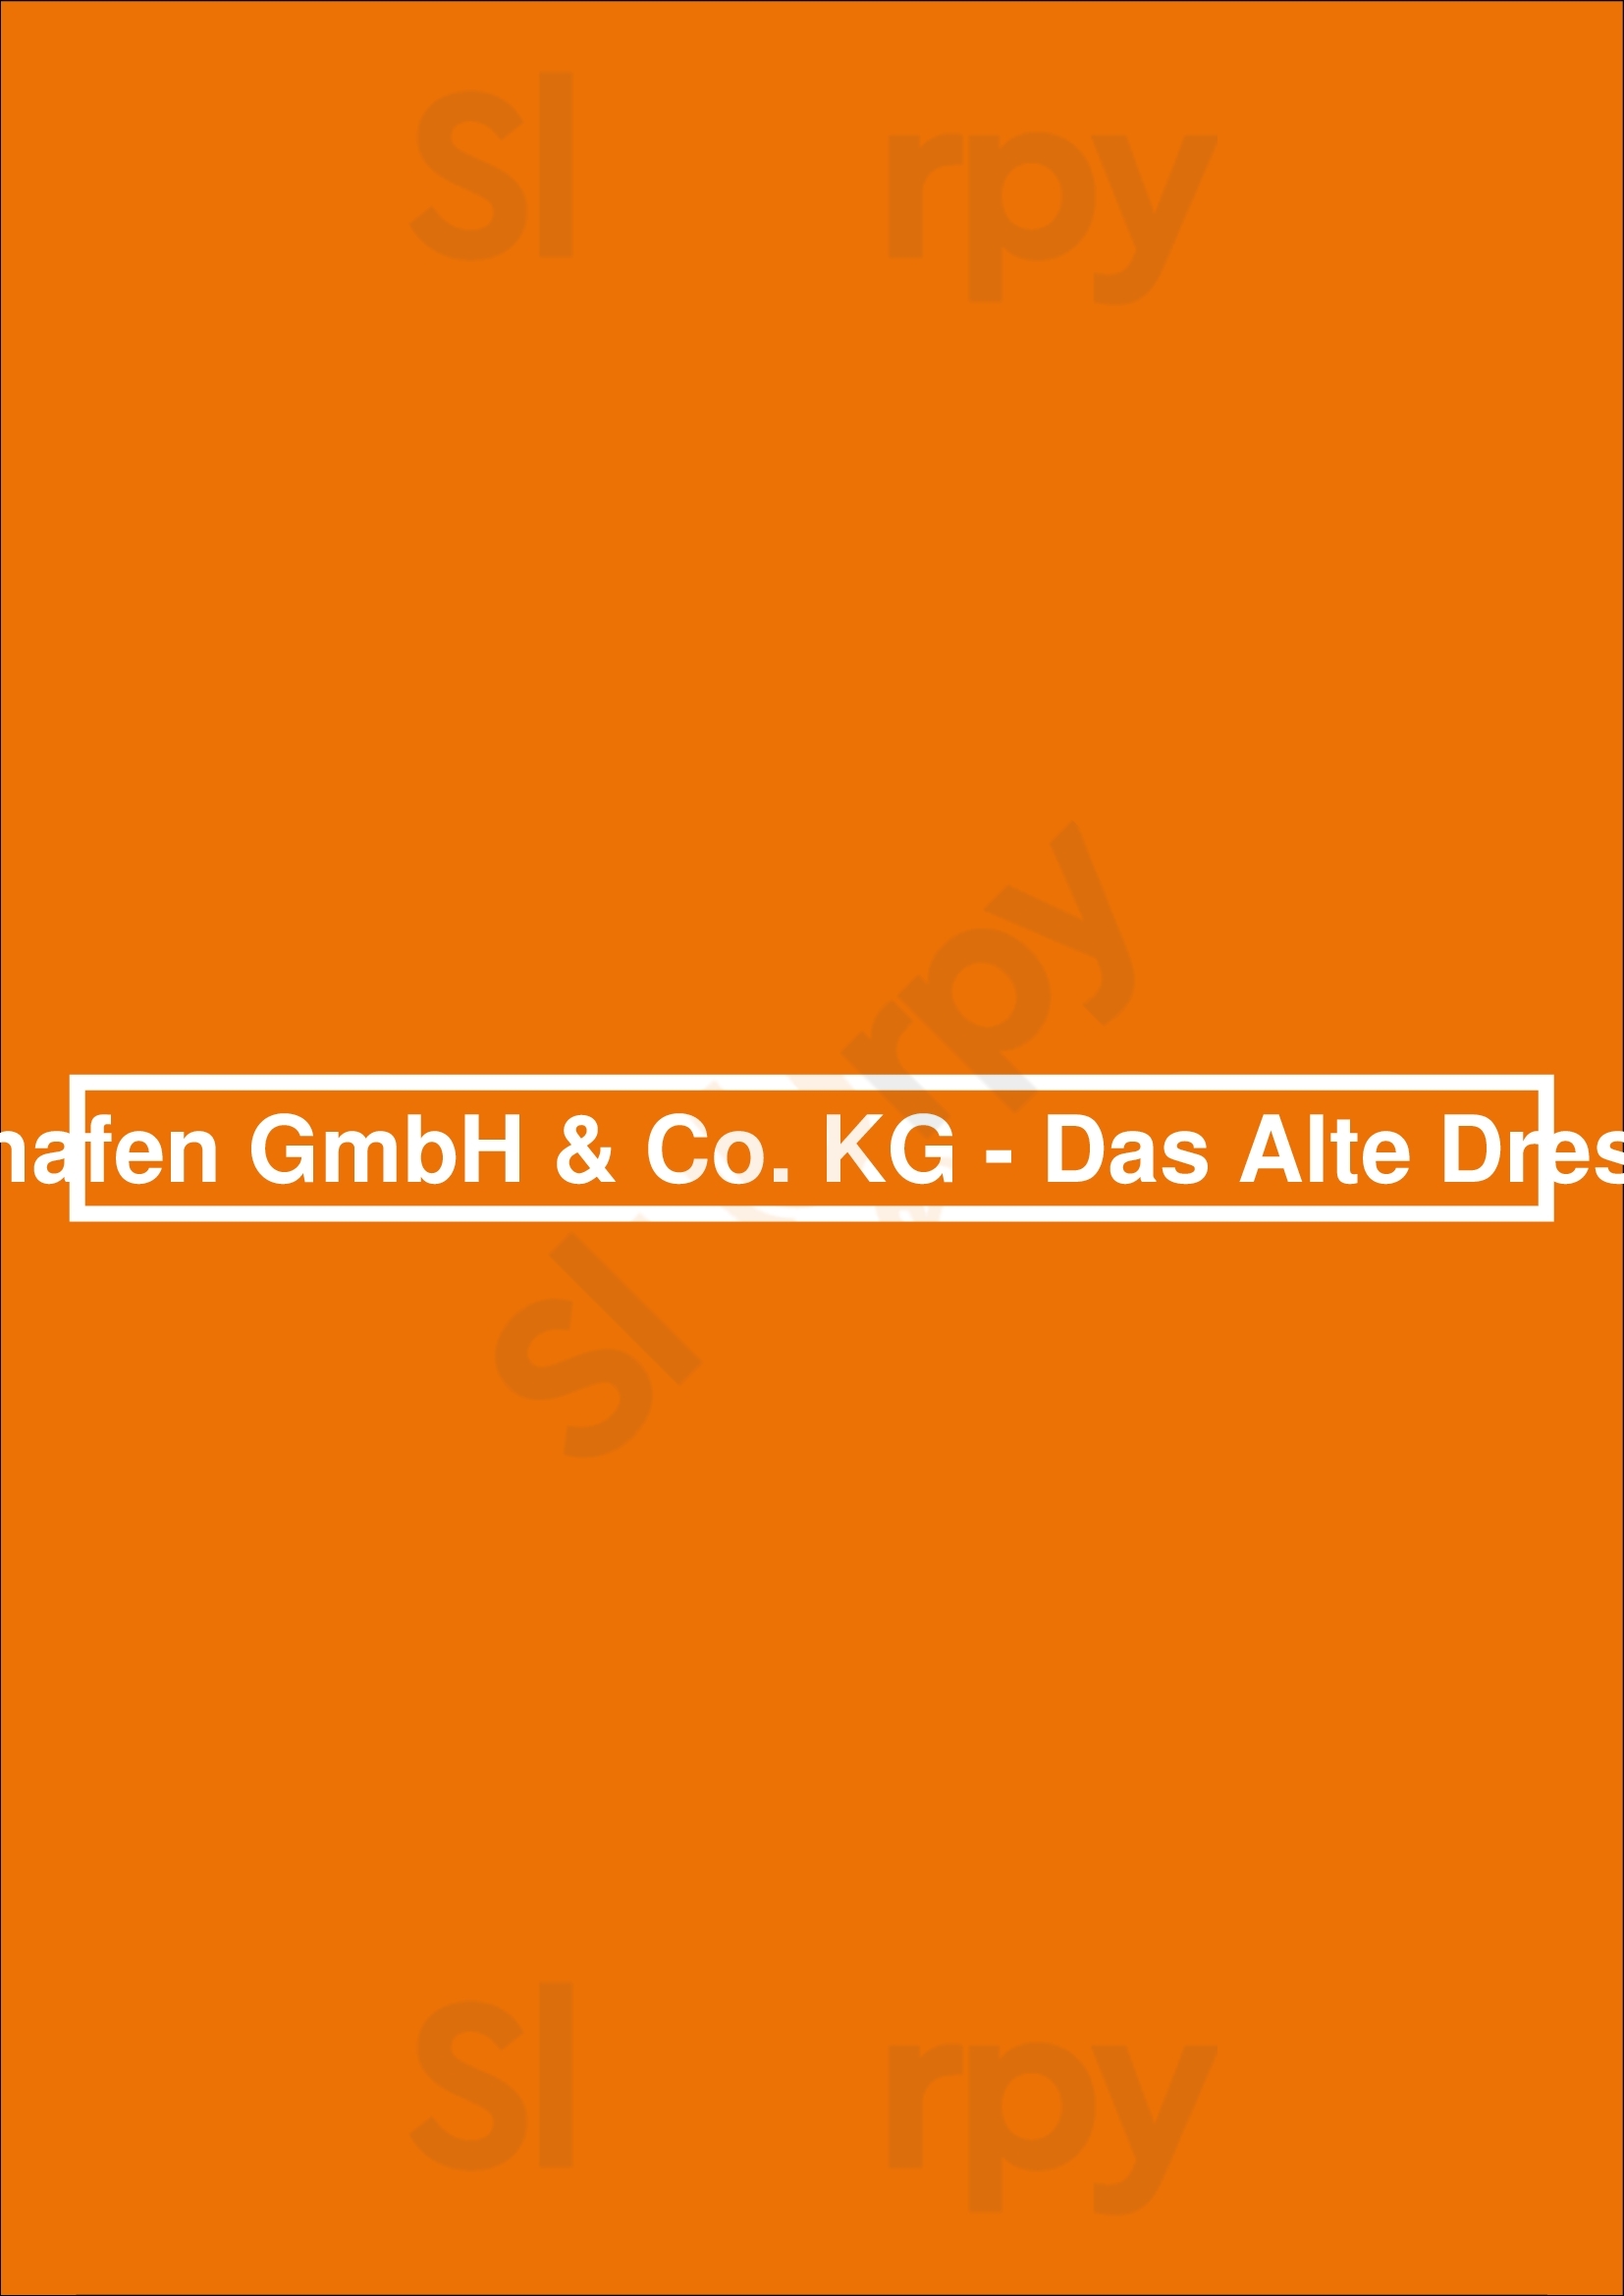 Fischhaus Alberthafen Gmbh & Co. Kg - Das Alte Dresdner Fischkontor Dresden Menu - 1